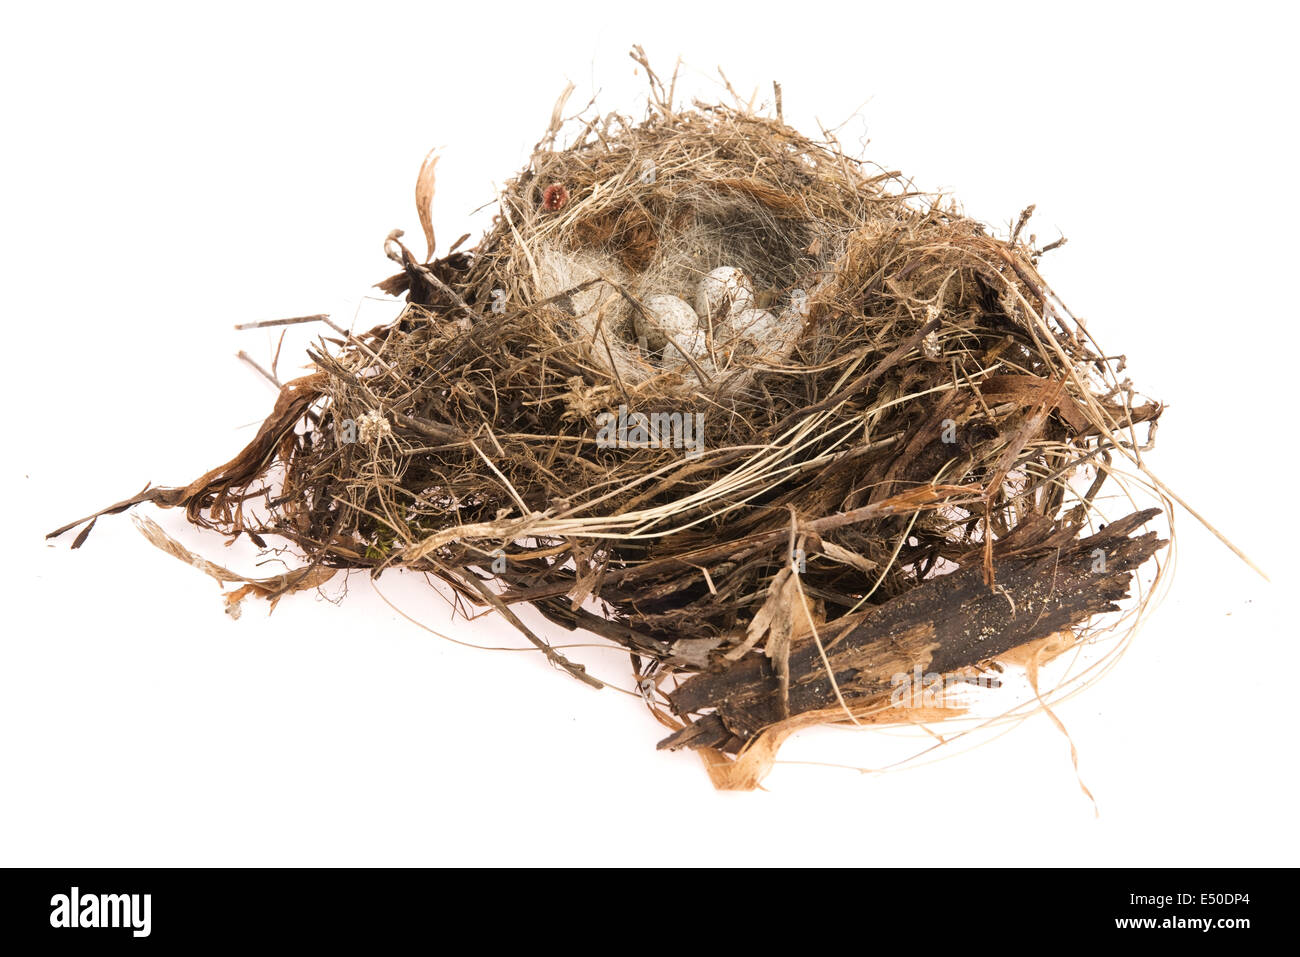 Dettaglio delle uova di uccello nel nido Foto Stock